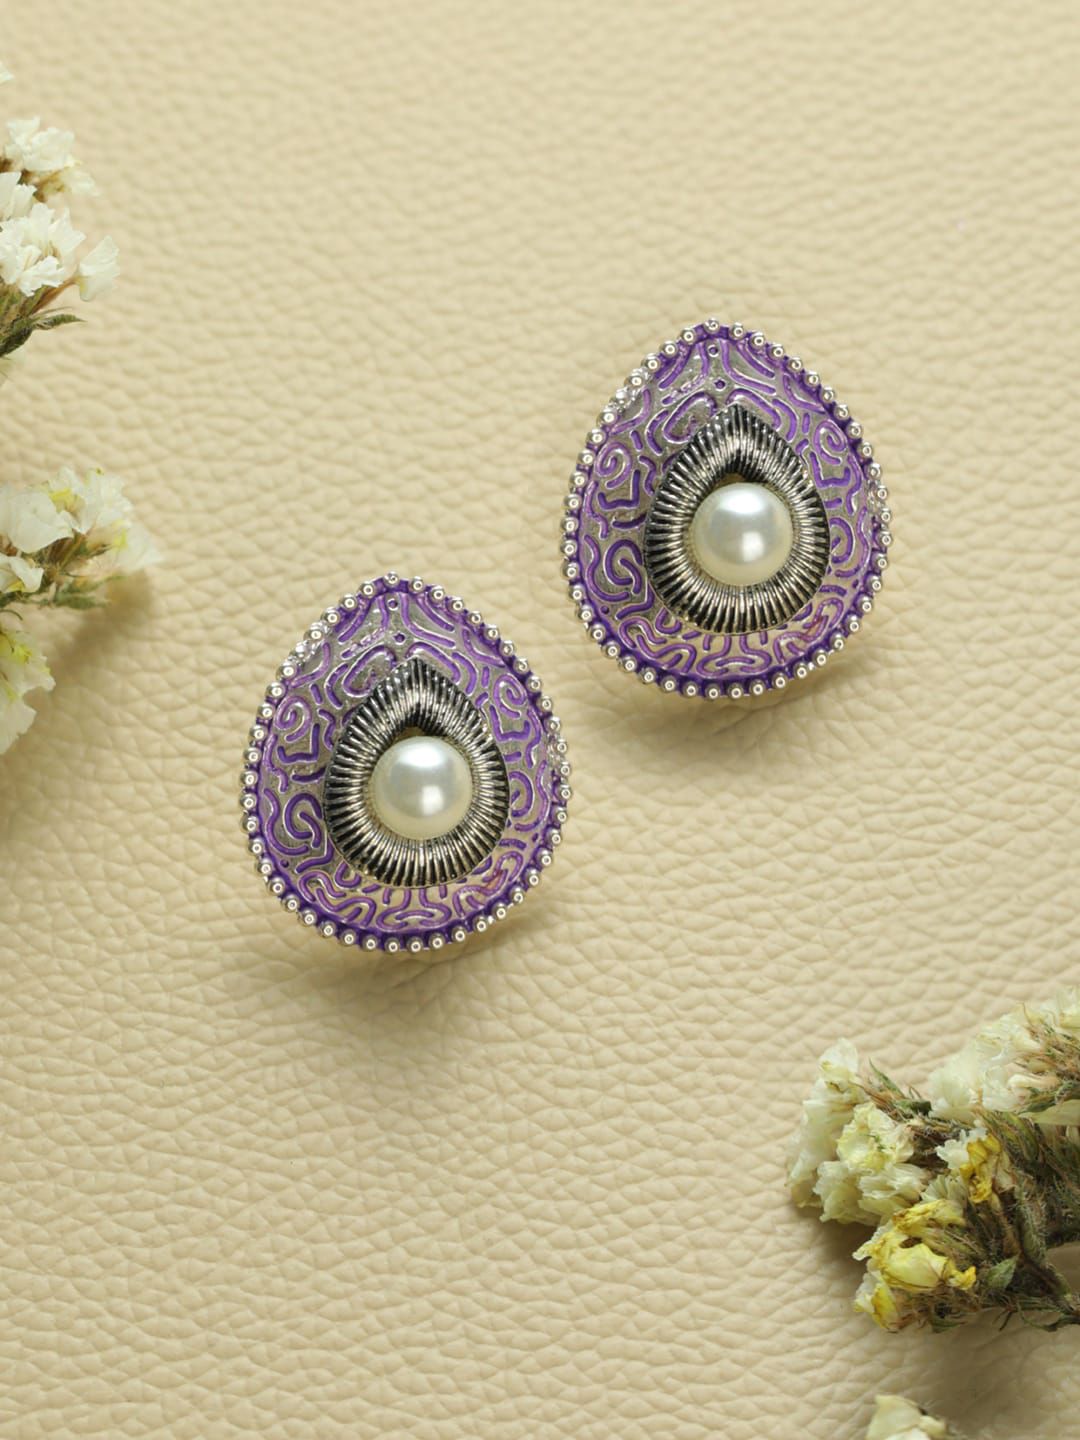 Priyaasi Silver-Plated Purple Teardrop Shaped Studs Earrings Price in India